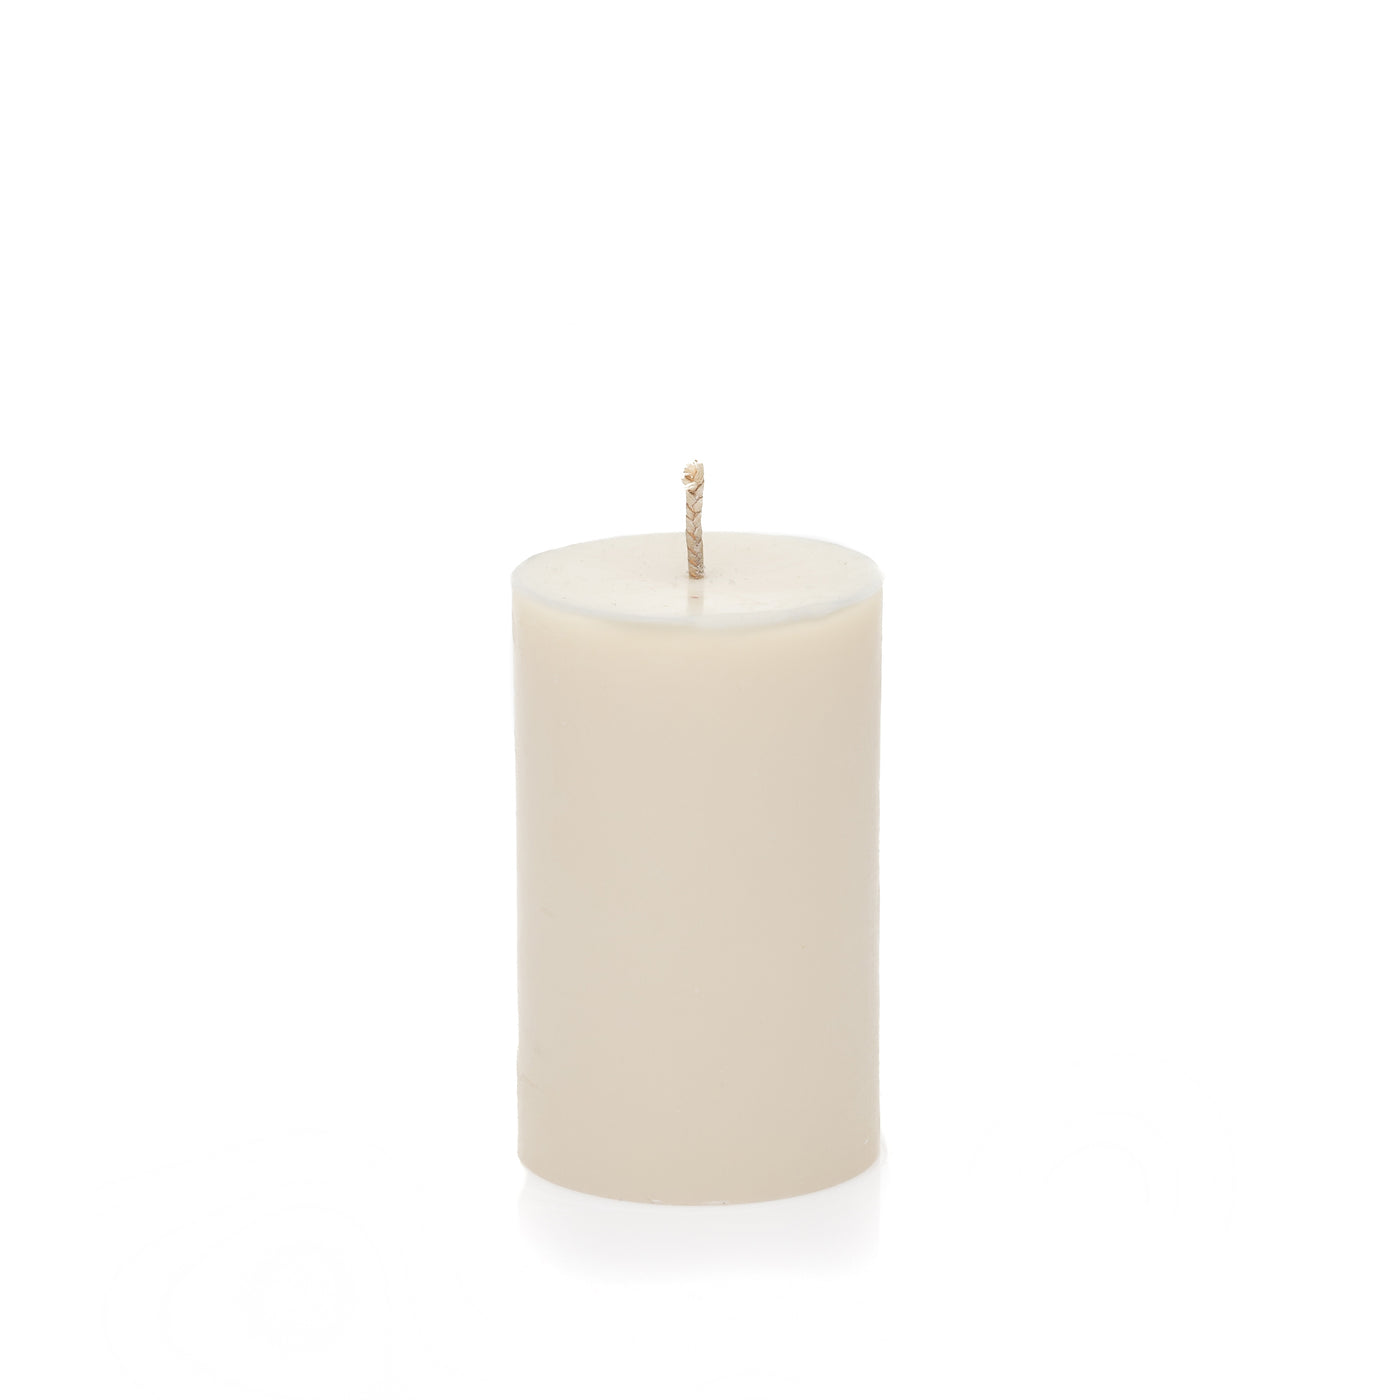 ORANGE et MANDARINE "Naked" scented candle